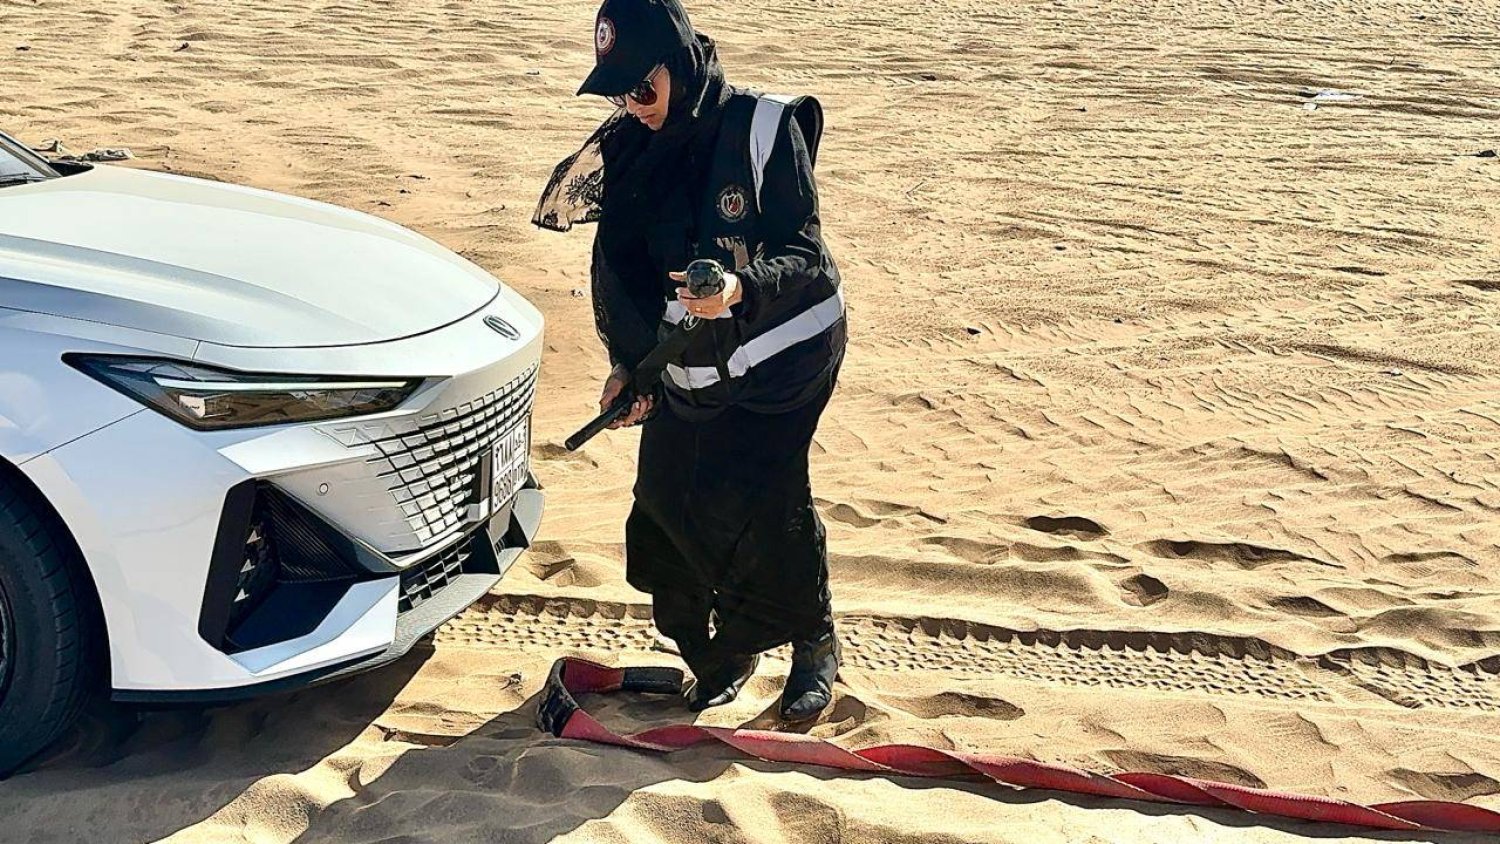 نورة الحميدي قائدة الفريق النسائي «برق للإنقاذ» أثناء سحبها إحدى السيارات العالقة في الصحراء (برق للإنقاذ)